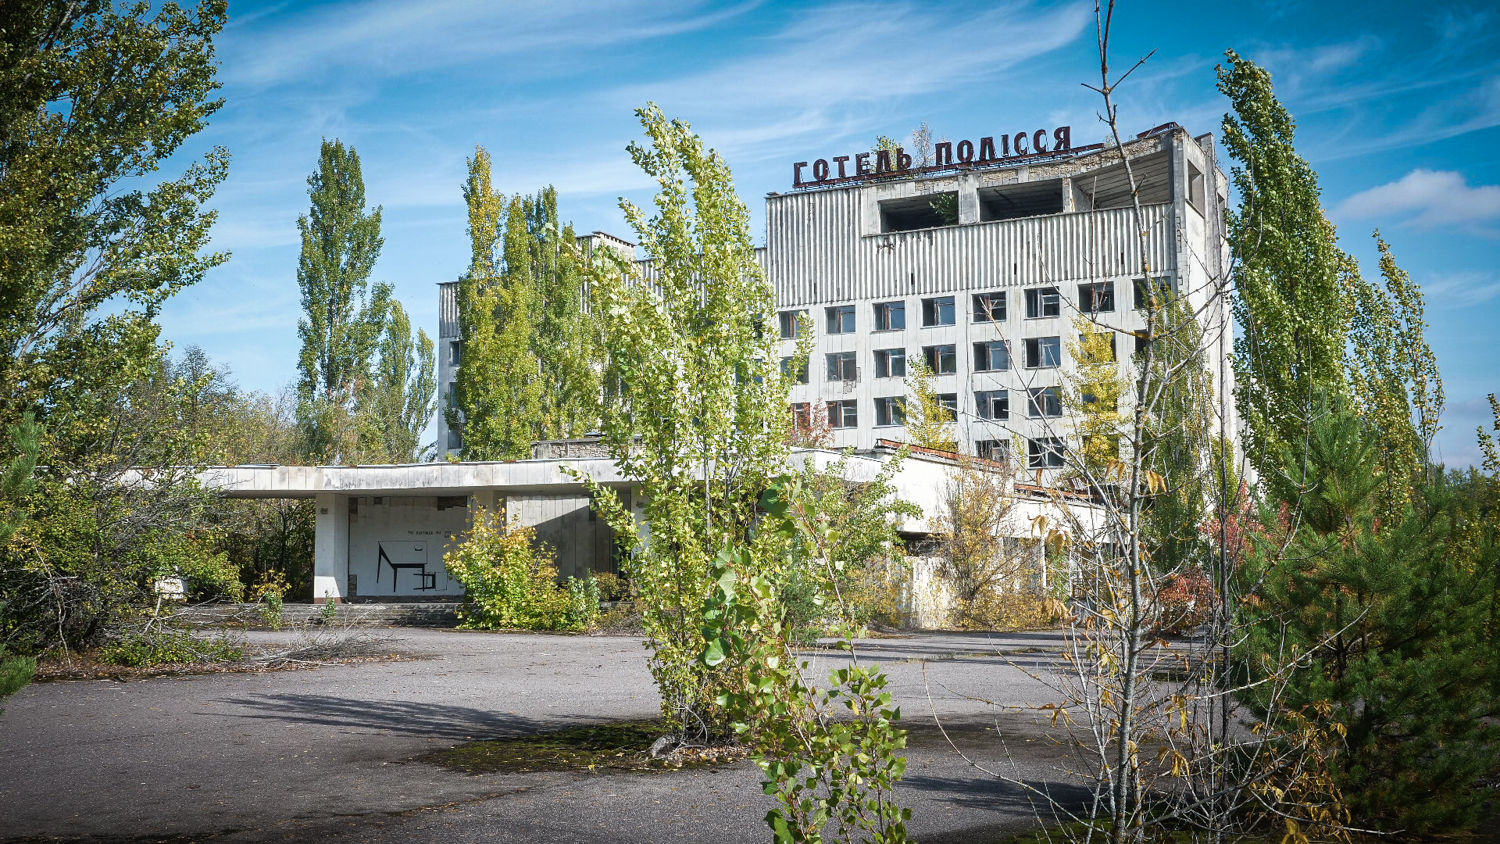 FBR Fotografía y Vídeo - chernobyl-6.jpg